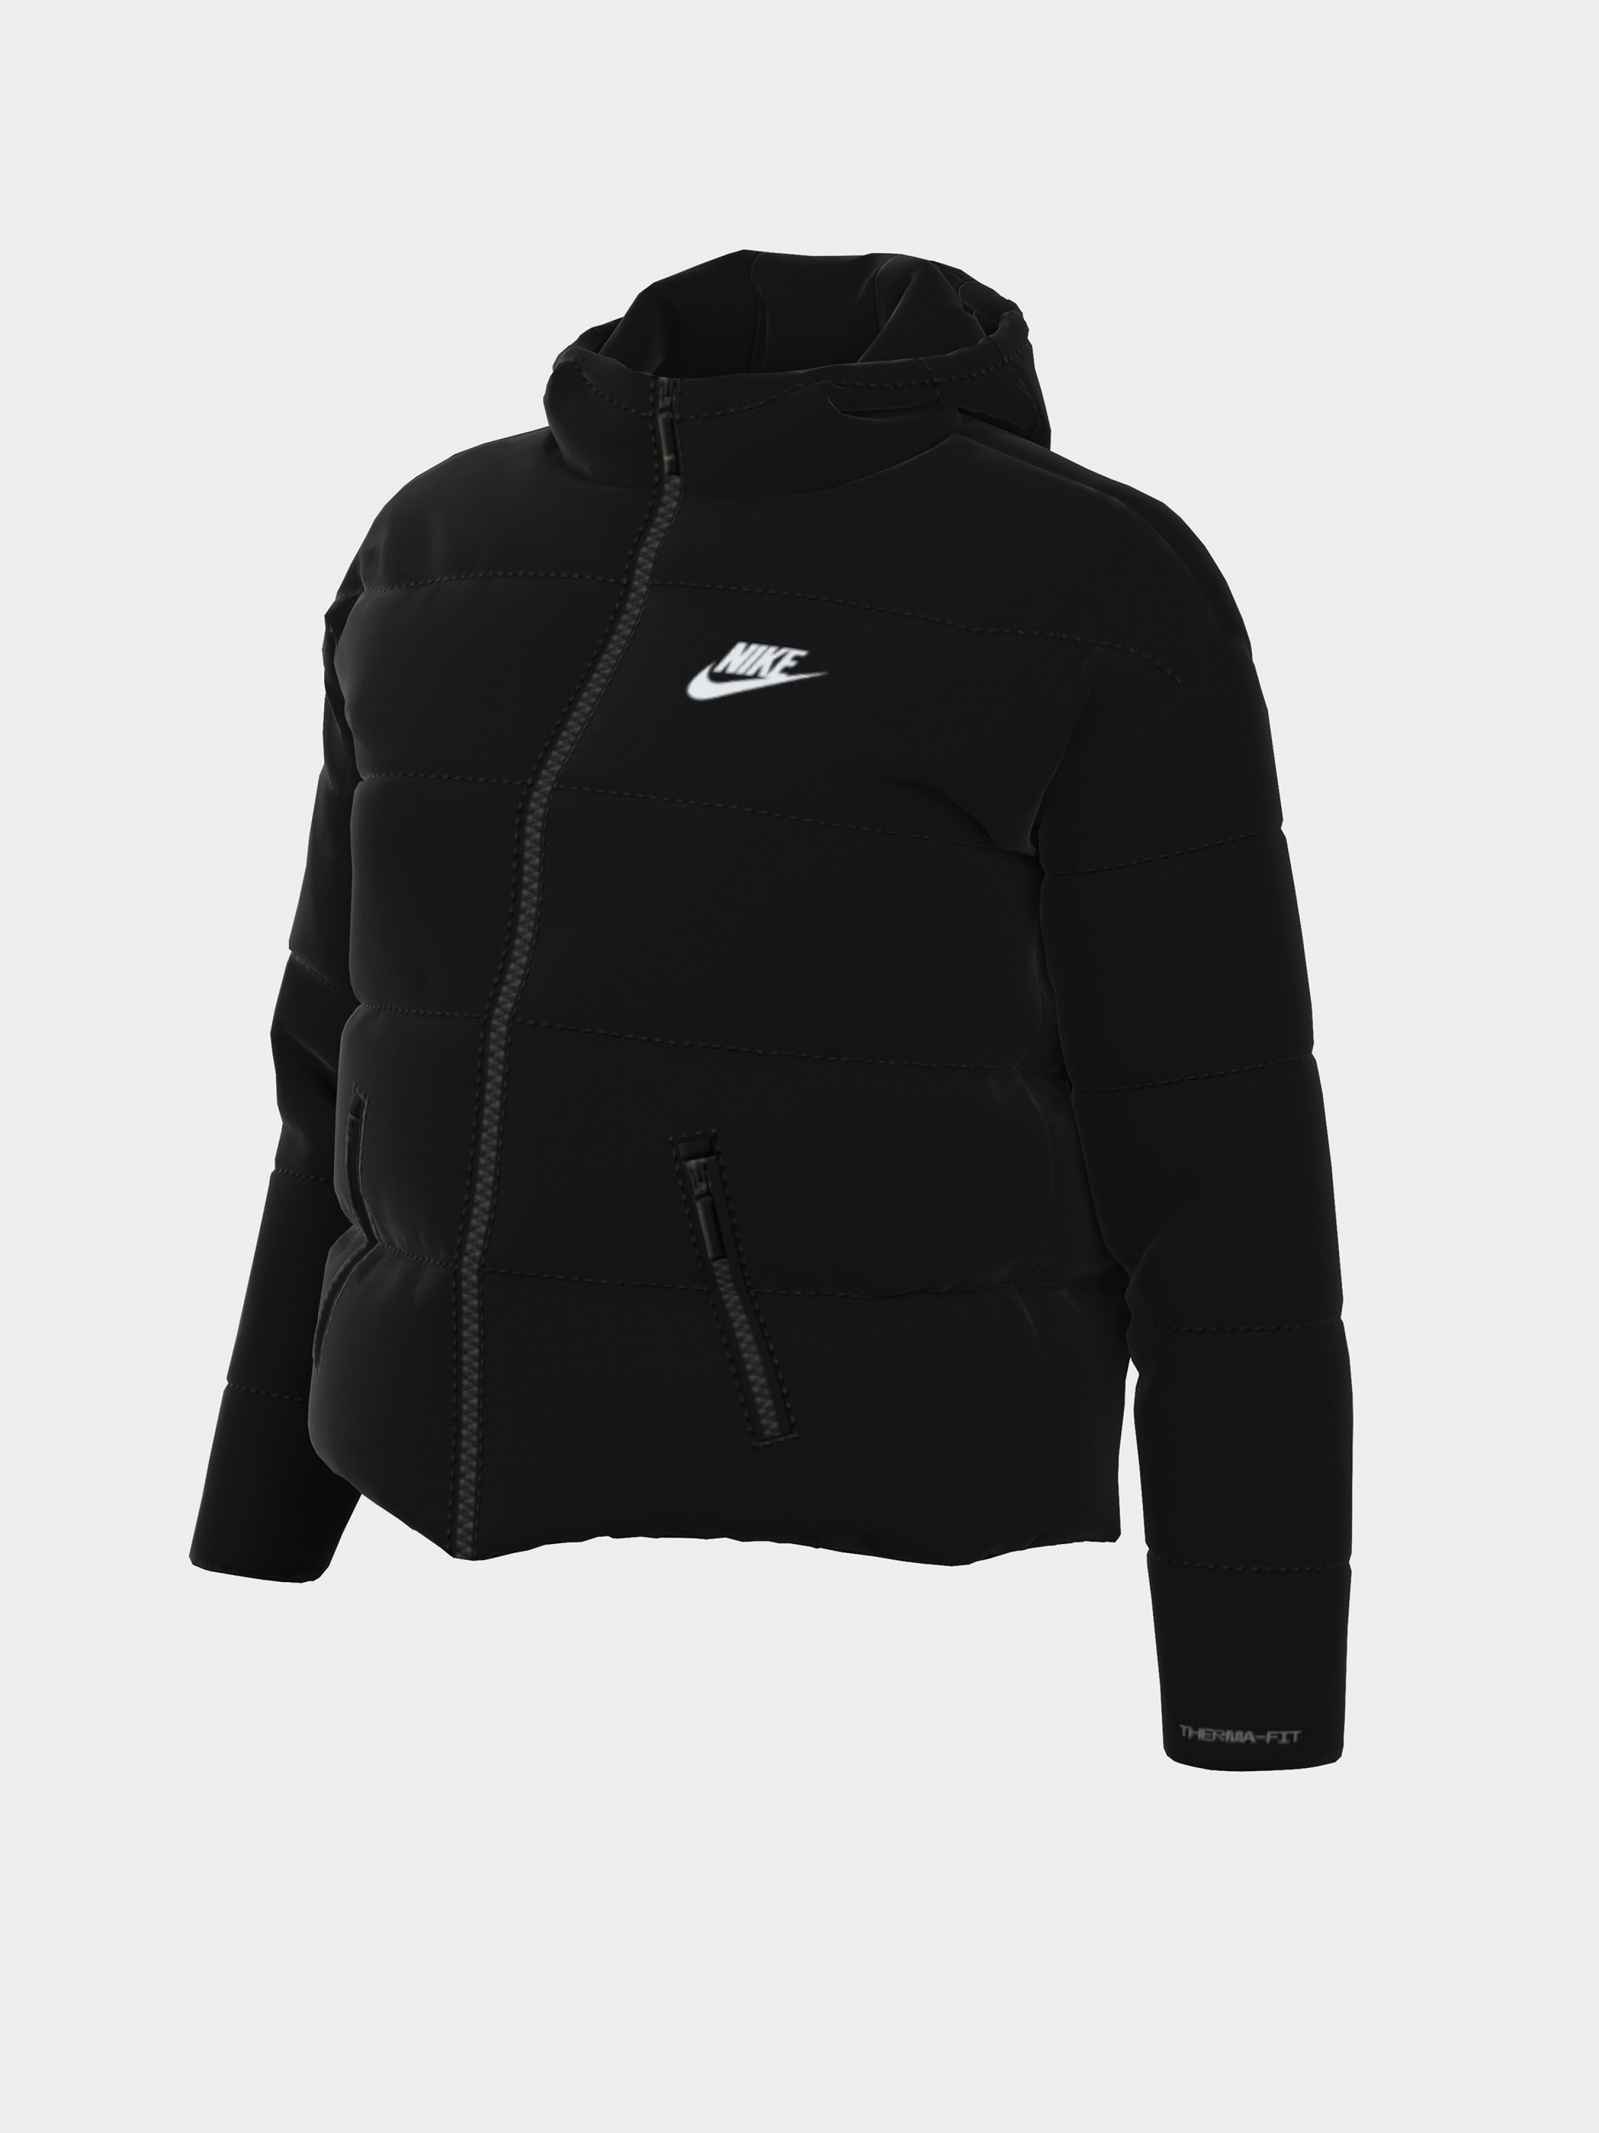 Зимняя куртка NIKE DX1797-010 для женщин, цвет: Чёрный - купить по выгодной  цене в Казахстане